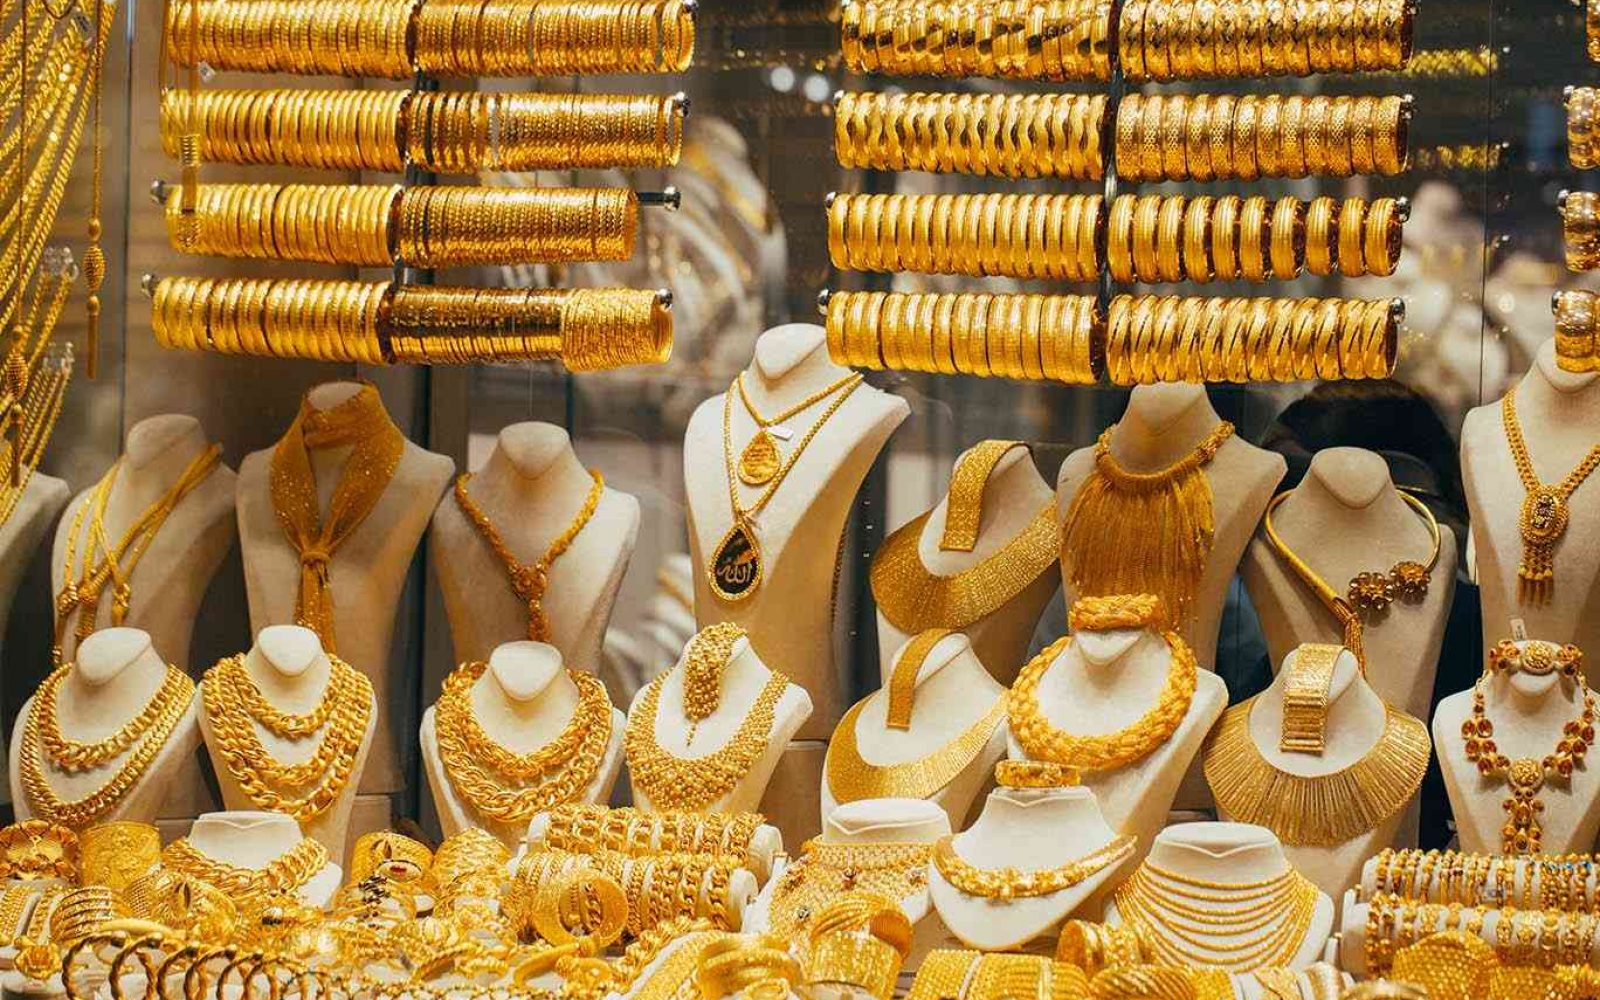 أردنيون يحتمون بـ"بريق الذهب" من عتمة المجهول